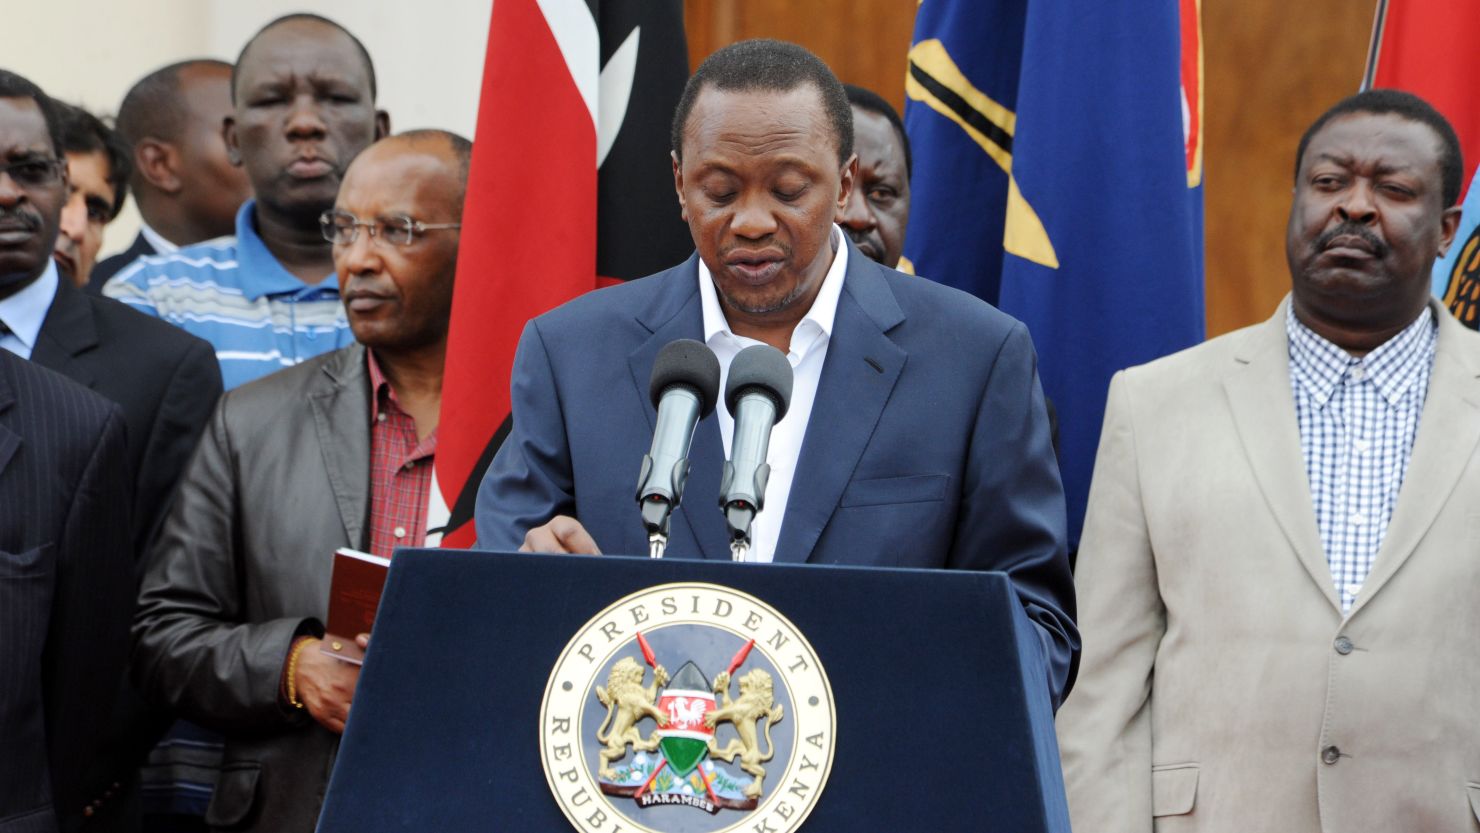 Kenya's President Uhuru Kenyatta said the new law defines various types of marriages.